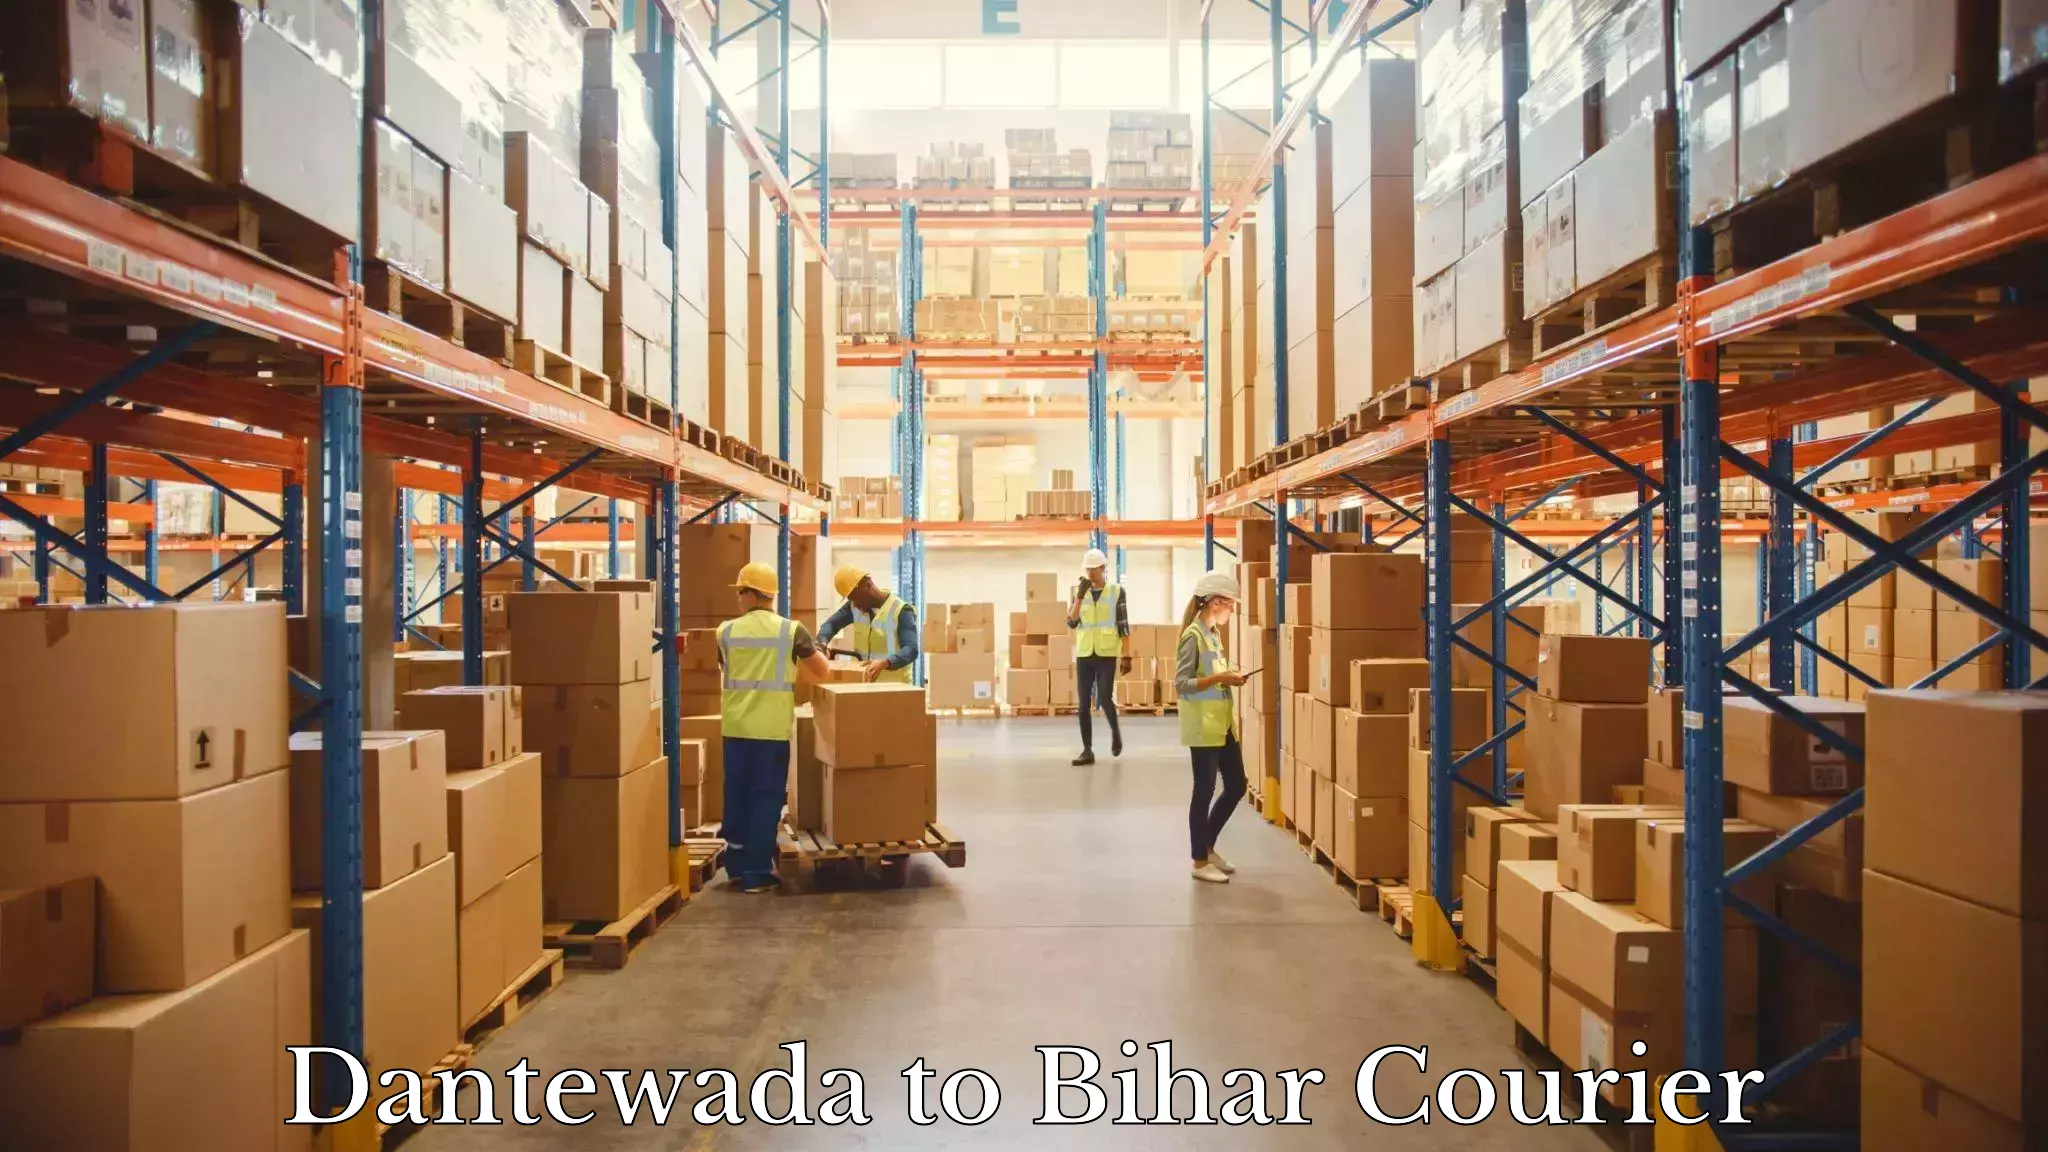 Efficient courier operations Dantewada to Bihar